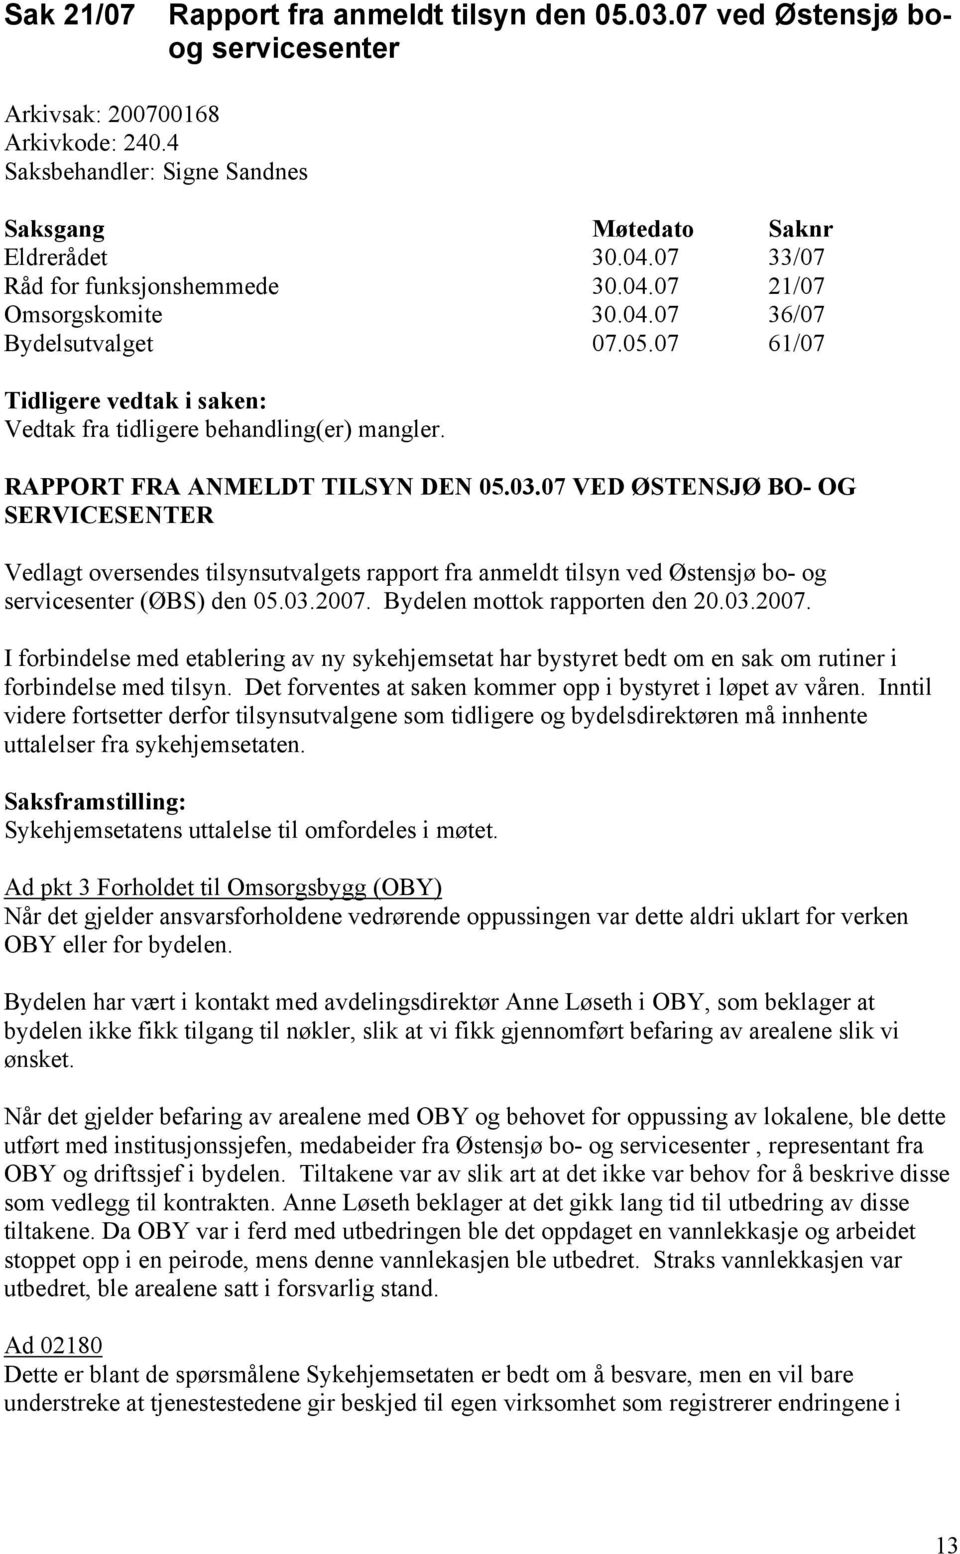 RAPPORT FRA ANMELDT TILSYN DEN 05.03.07 VED ØSTENSJØ BO- OG SERVICESENTER Vedlagt oversendes tilsynsutvalgets rapport fra anmeldt tilsyn ved Østensjø bo- og servicesenter (ØBS) den 05.03.2007.